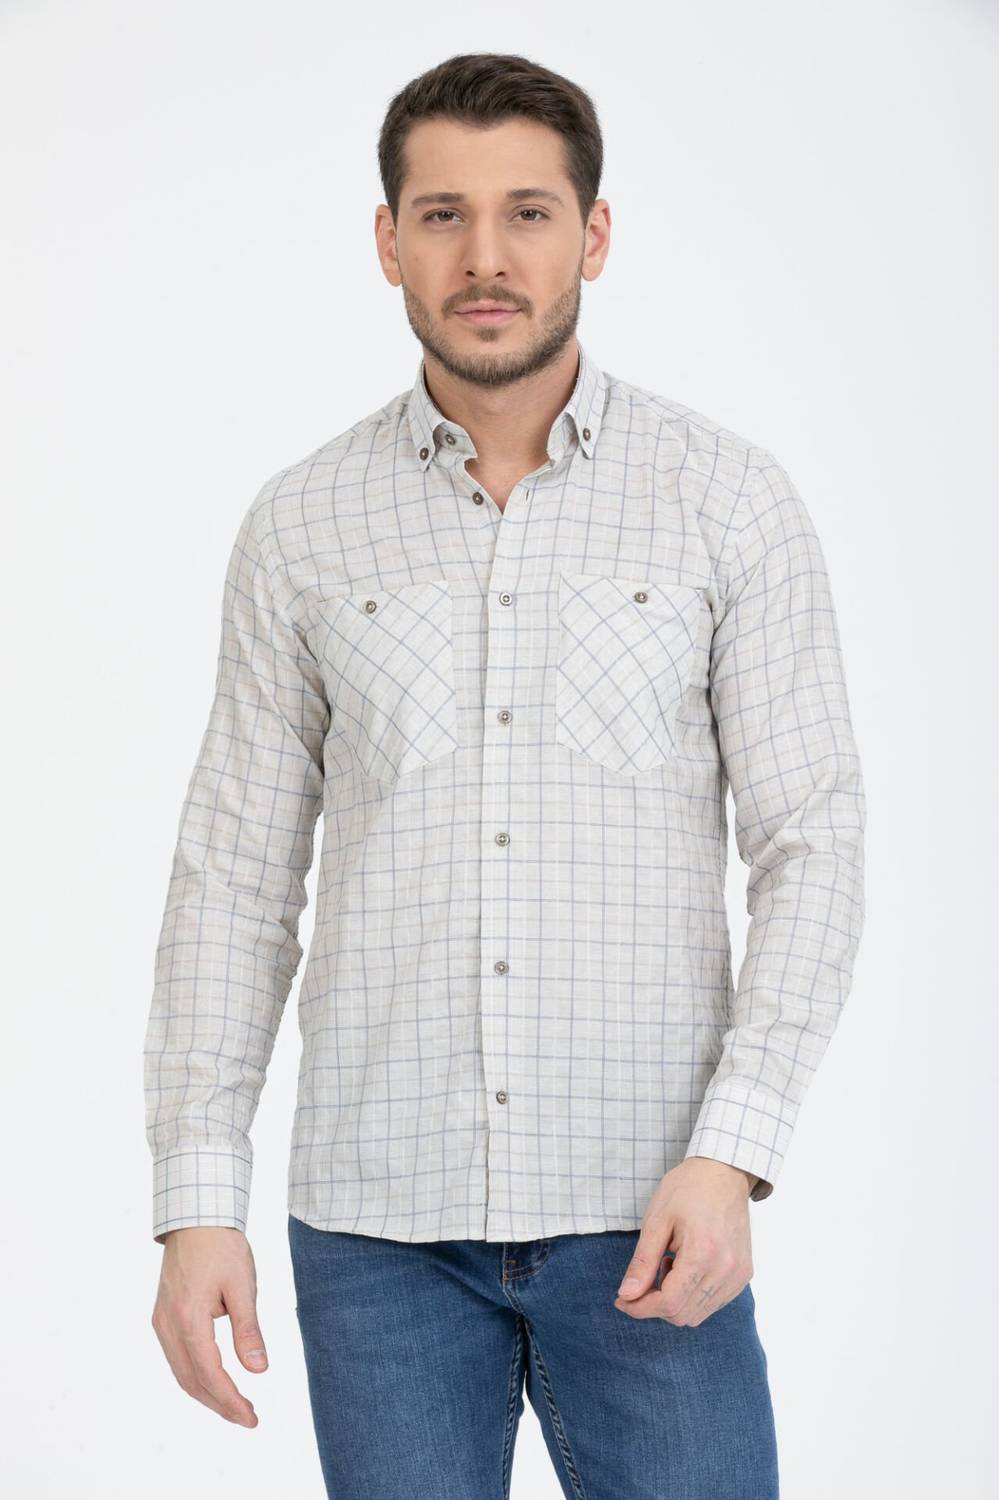 قميص Varetta الرجالي ذو الياقة الكريمية والمزين بأزرار مزدوجة